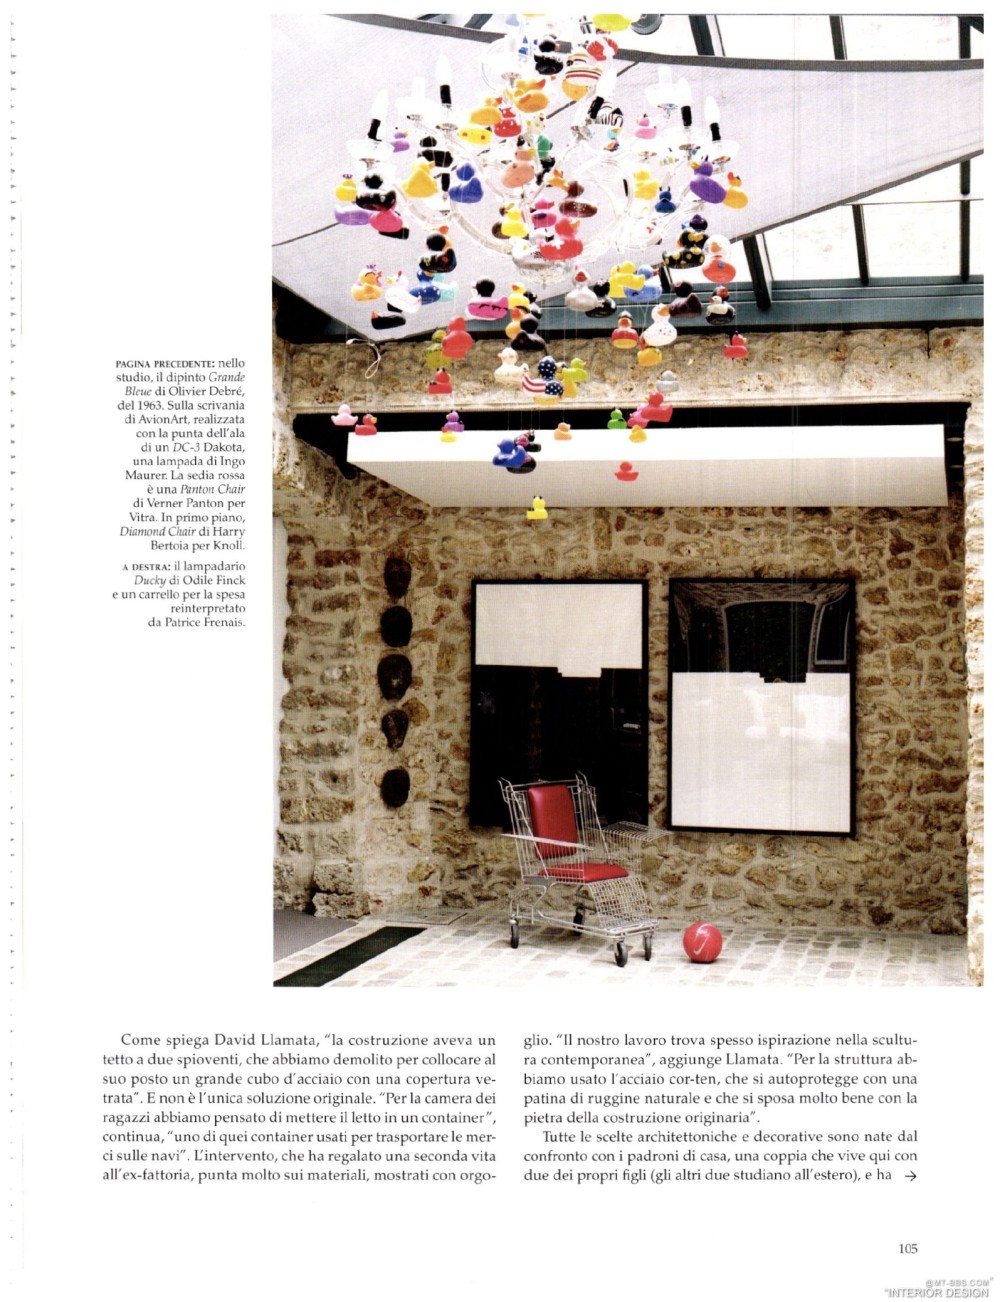 意大利AD 杂志 2012年全年JPG高清版本 全免（上传完毕）_0107.jpg